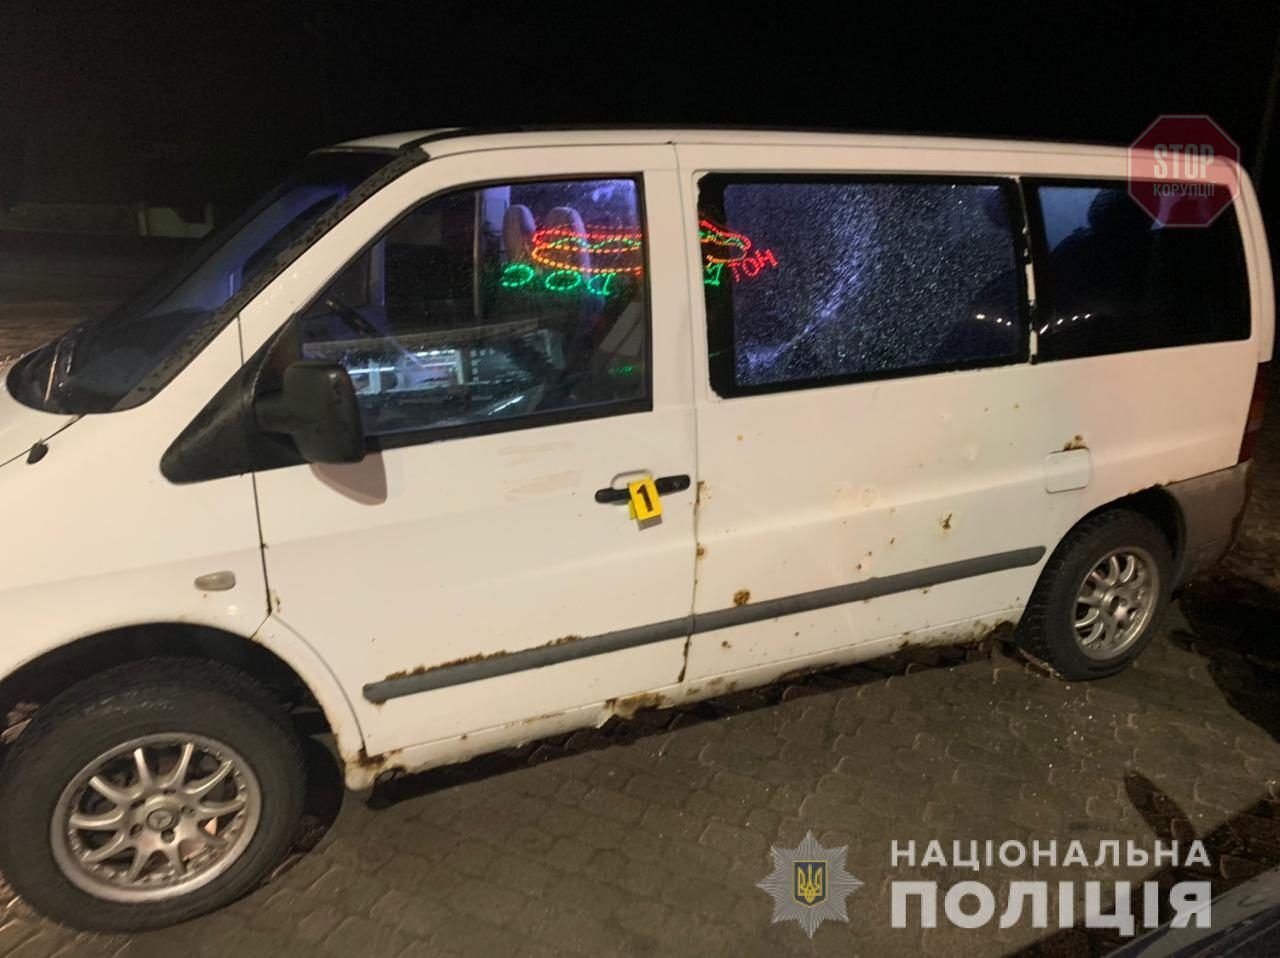  На Львівщині поліцейські затримали зловмисника, який стріляв у мікроавтобус Фото: Нацполіція